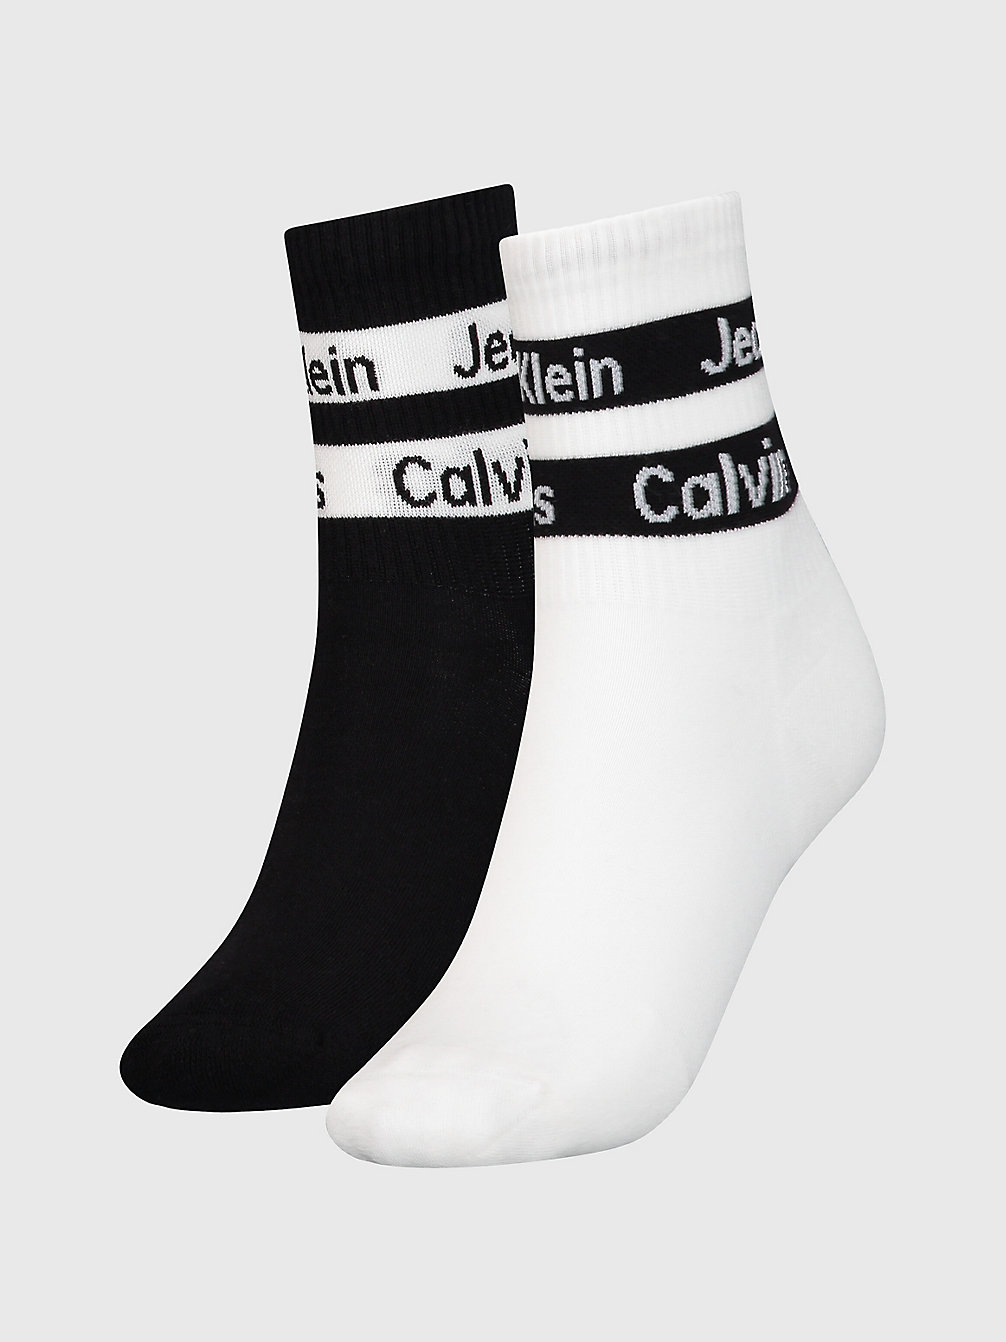 WHITE/BLACK 2 Pack Crew Socks undefined women Calvin Klein